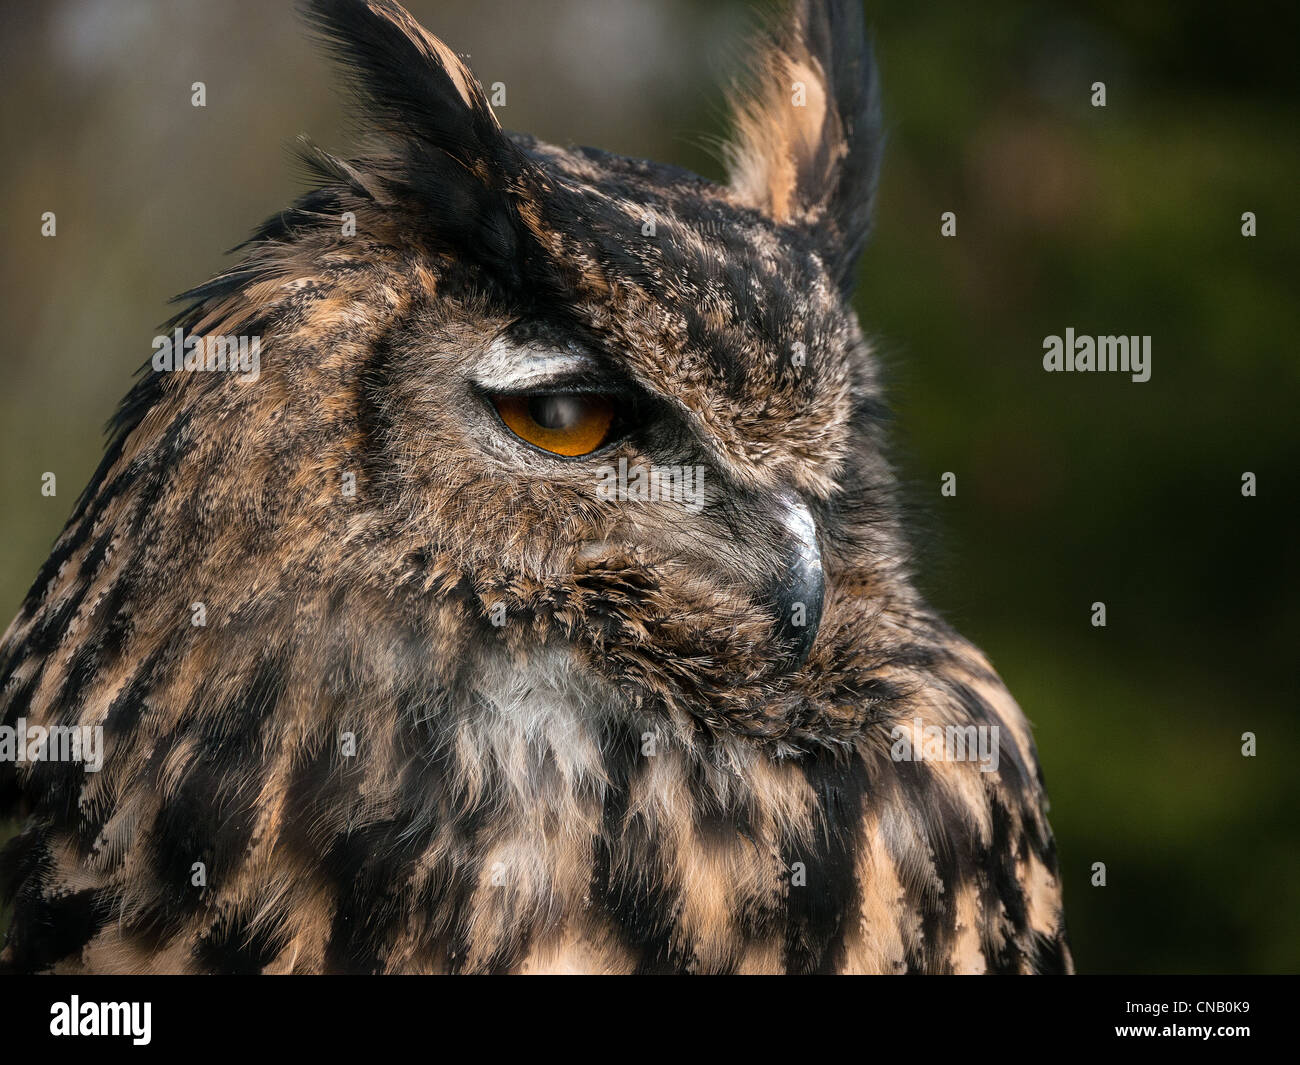 Close up European Eagle Owl with orange eyes, Bucks, UK Stock Photo